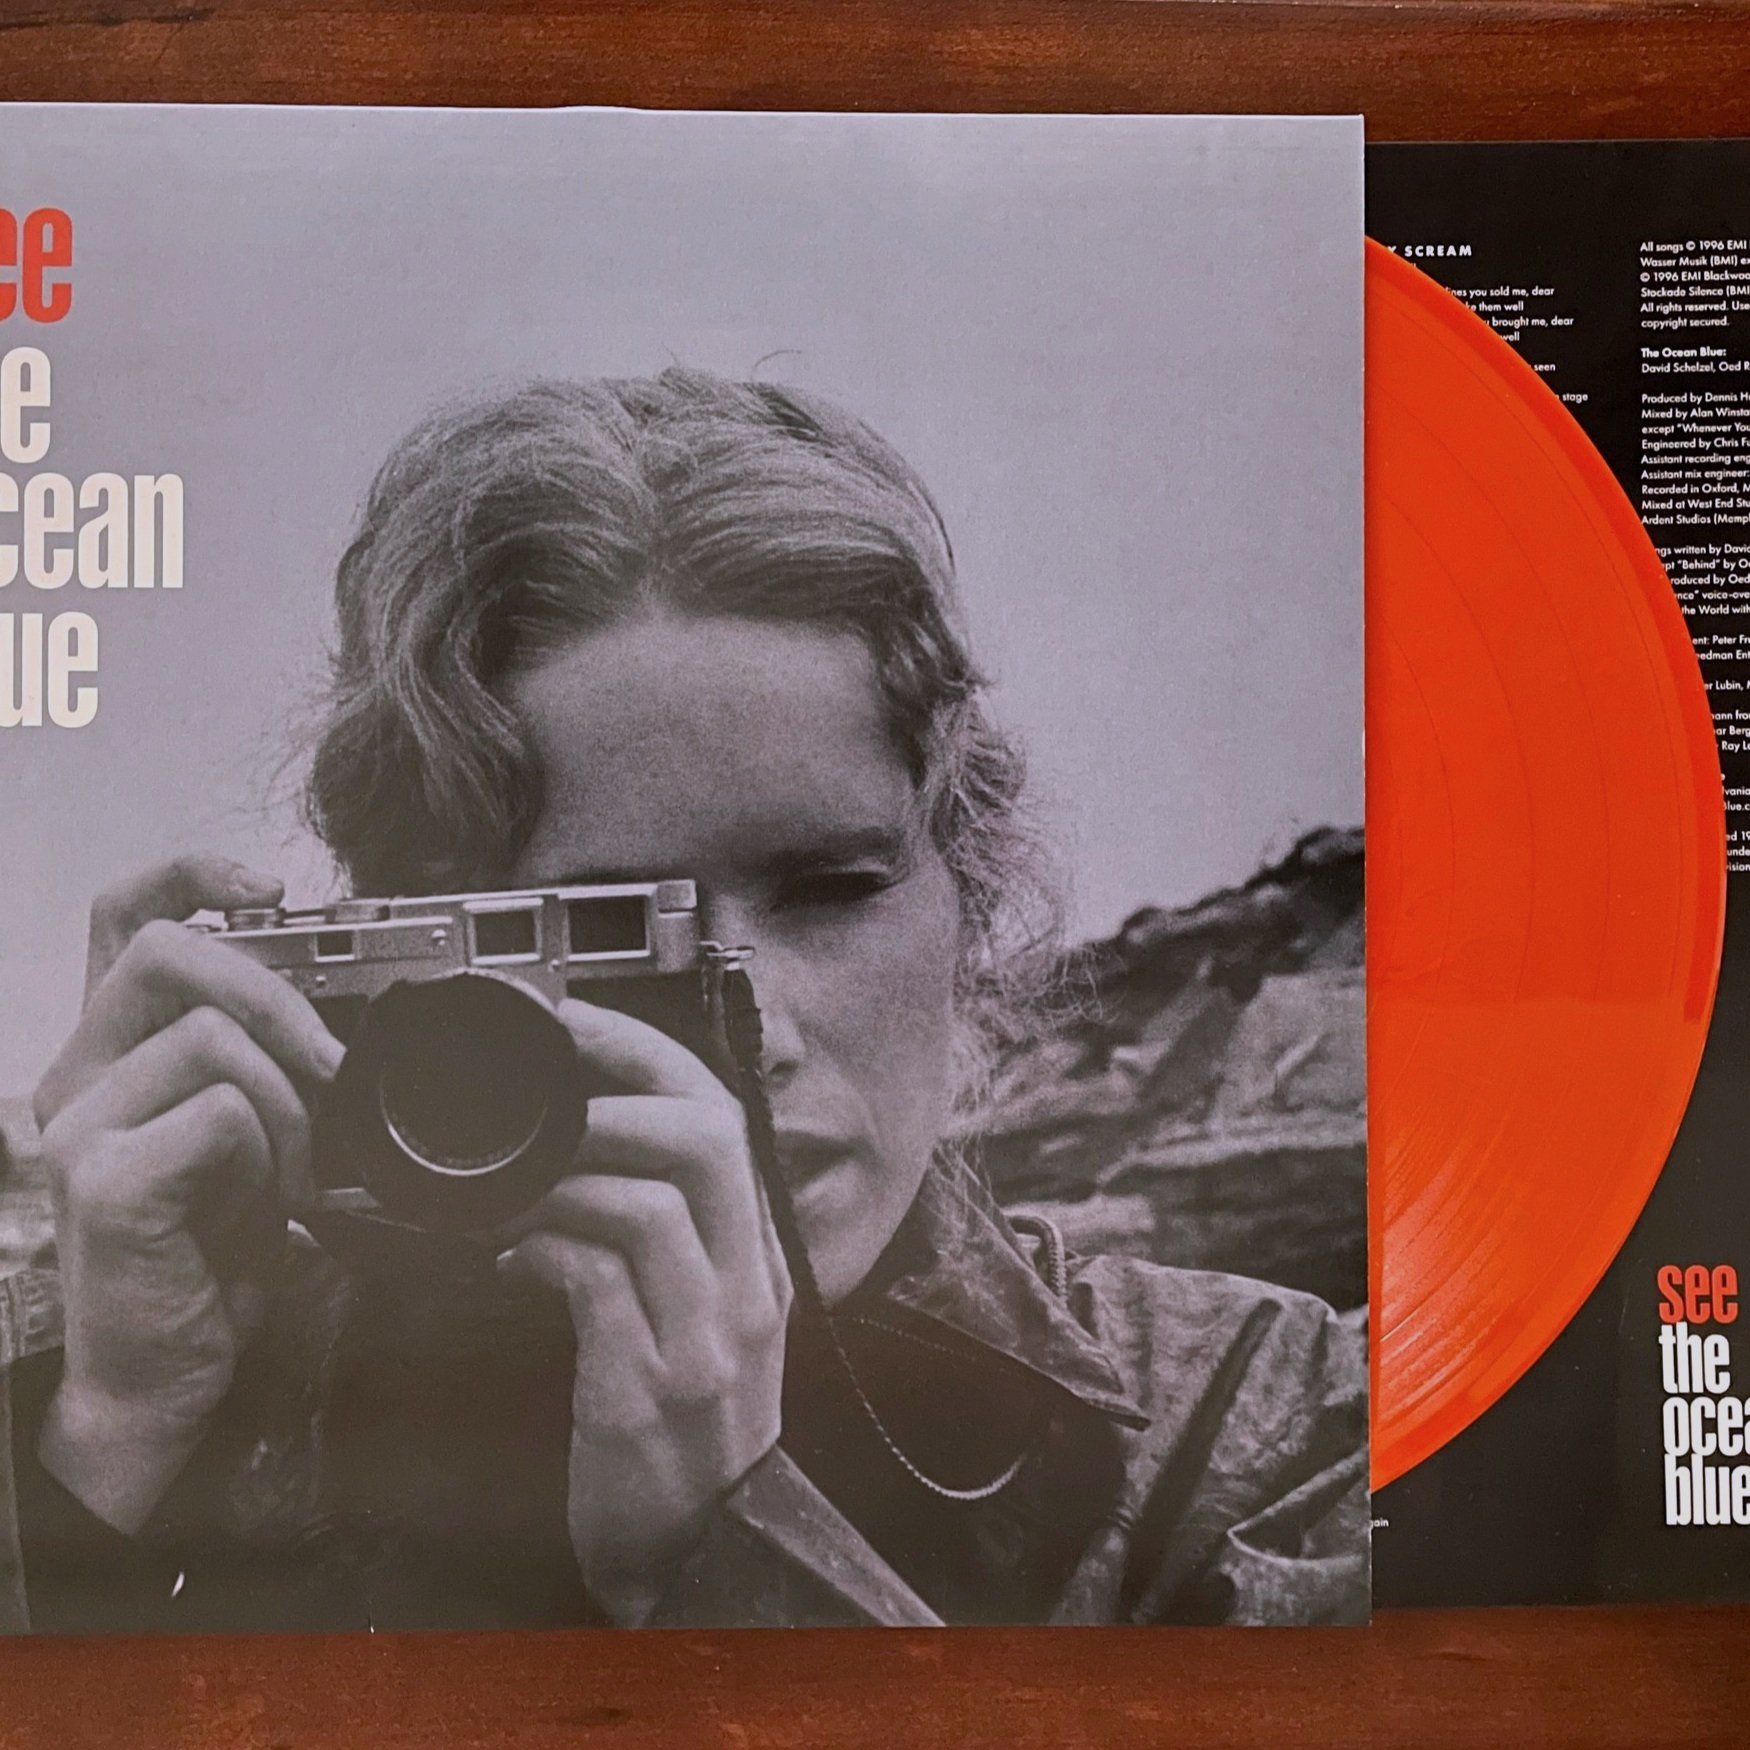 See The Ocean Blue LP (Orange Vinyl) — The Ocean Blue